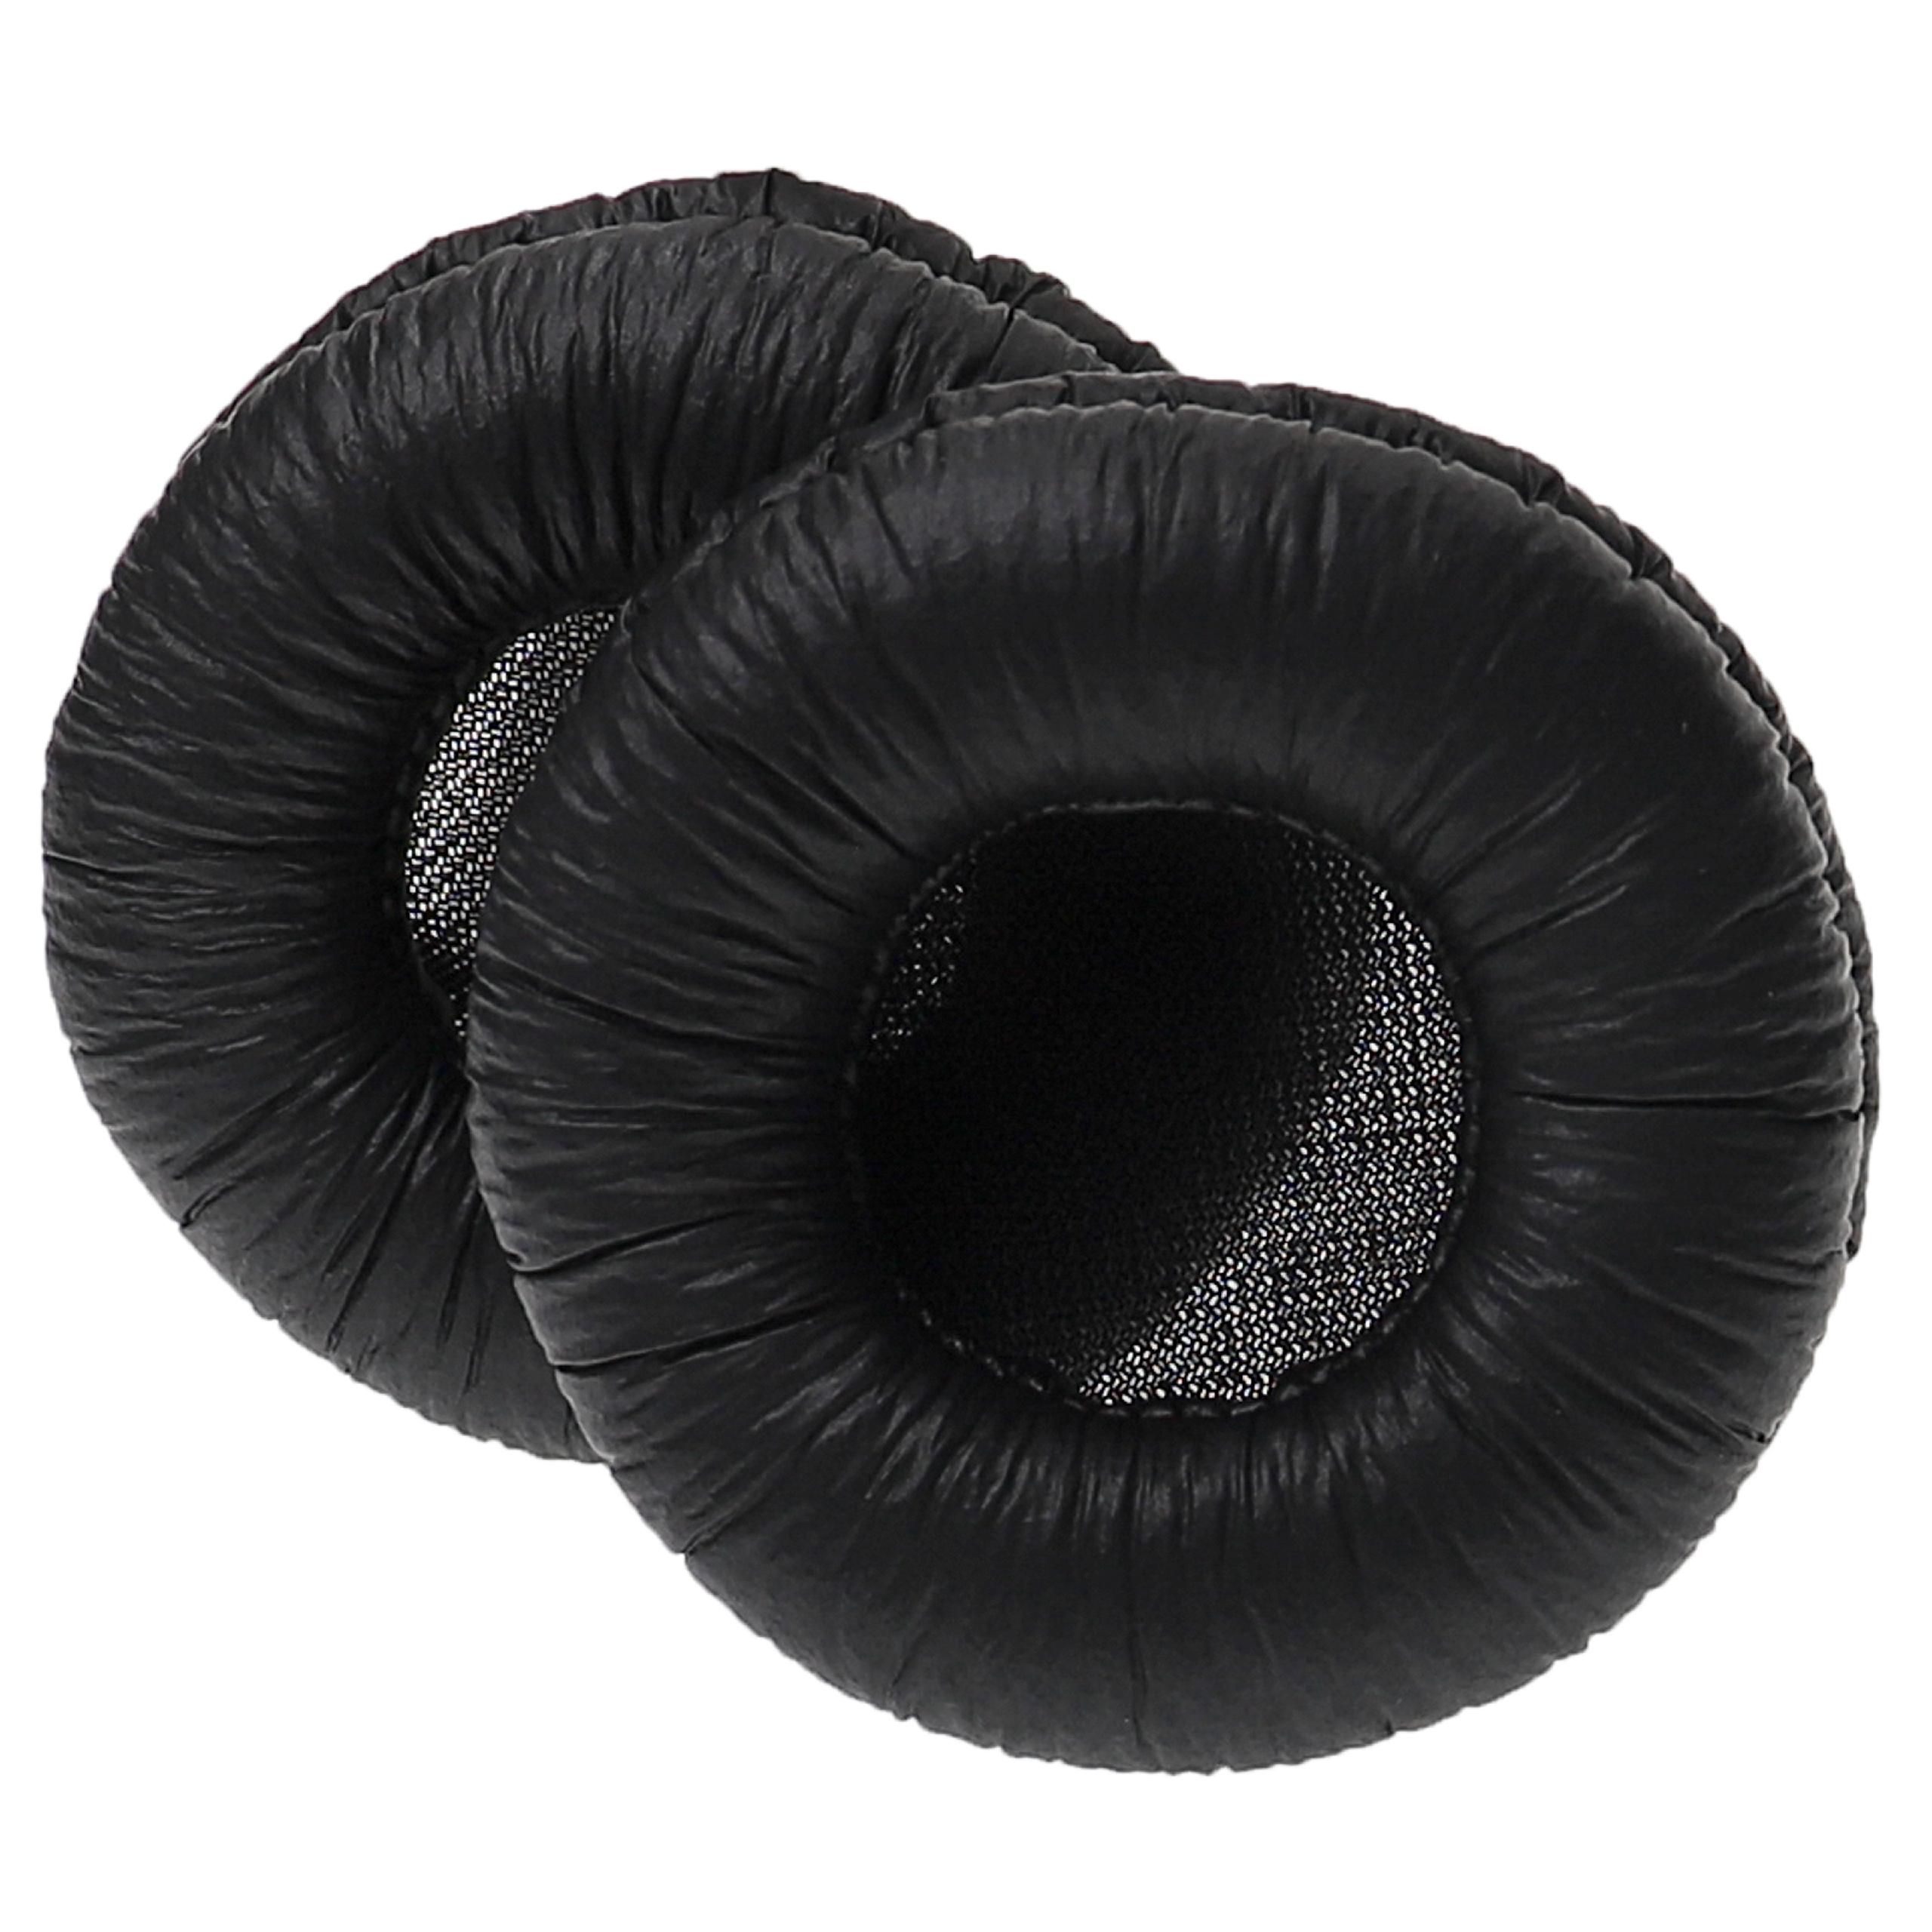 Poduszki do słuchawek PX 100 - pady miękkie, grub. 15 mm, czarny